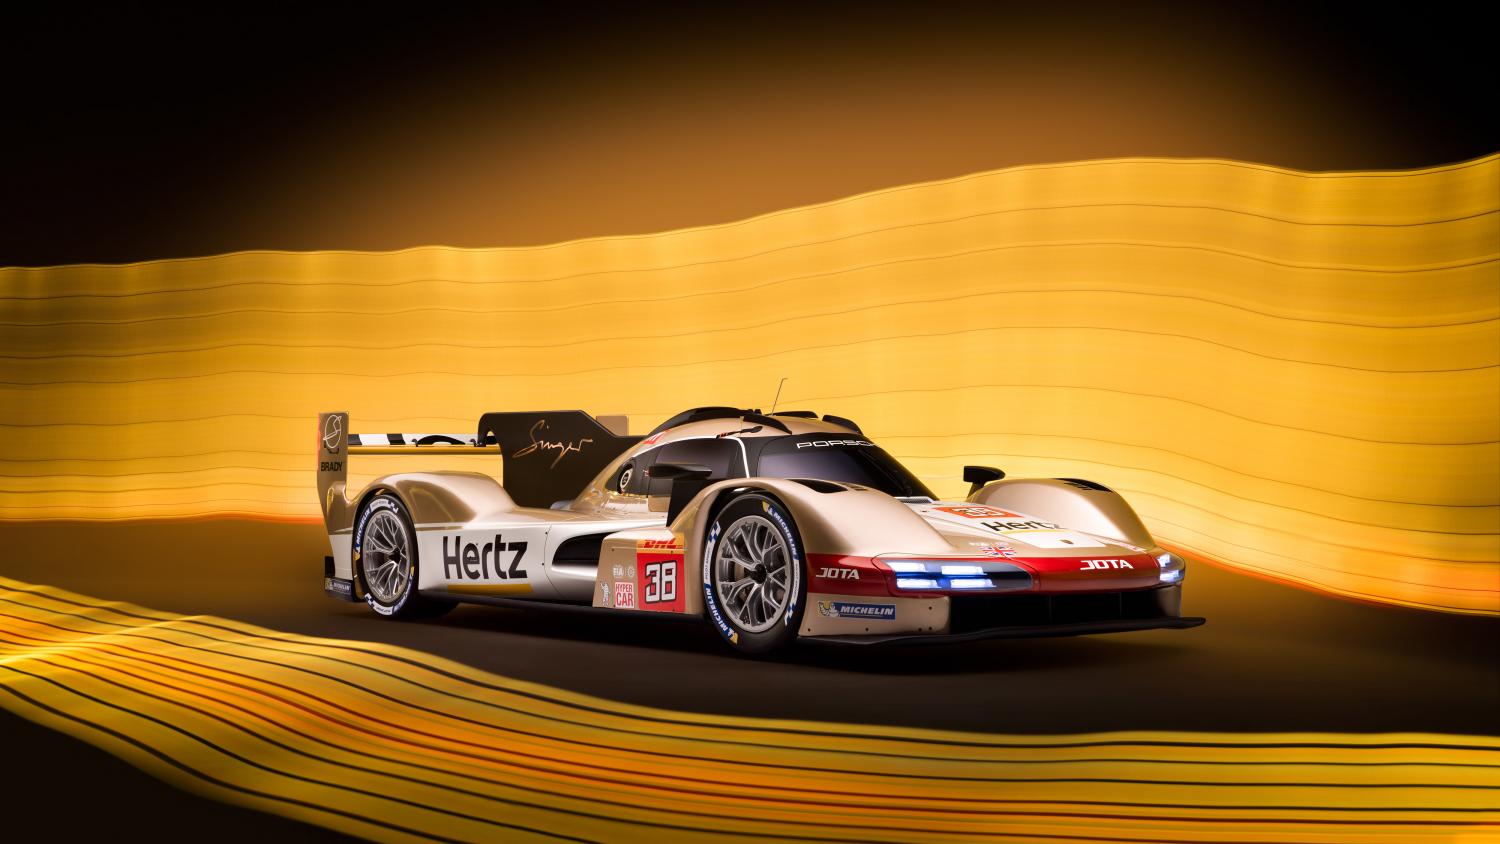 24 Hours of Le Mans – Hertz Team Jota unveils its Porsche 963 livery